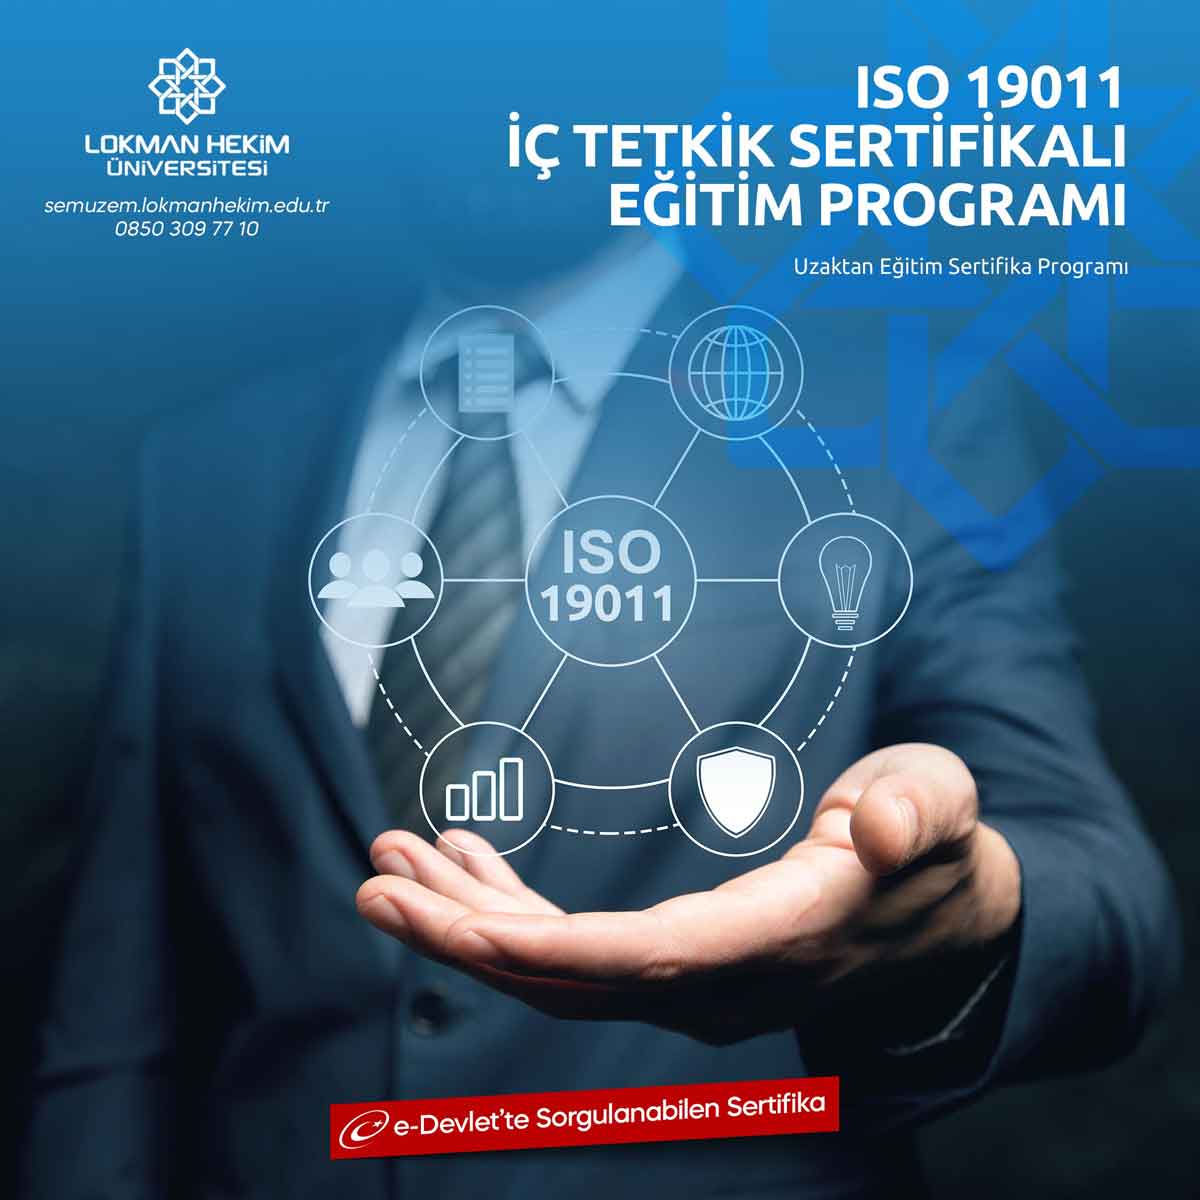 ISO 19011 İç Tetkik Sertifikası Nedir, Nasıl Alınır?